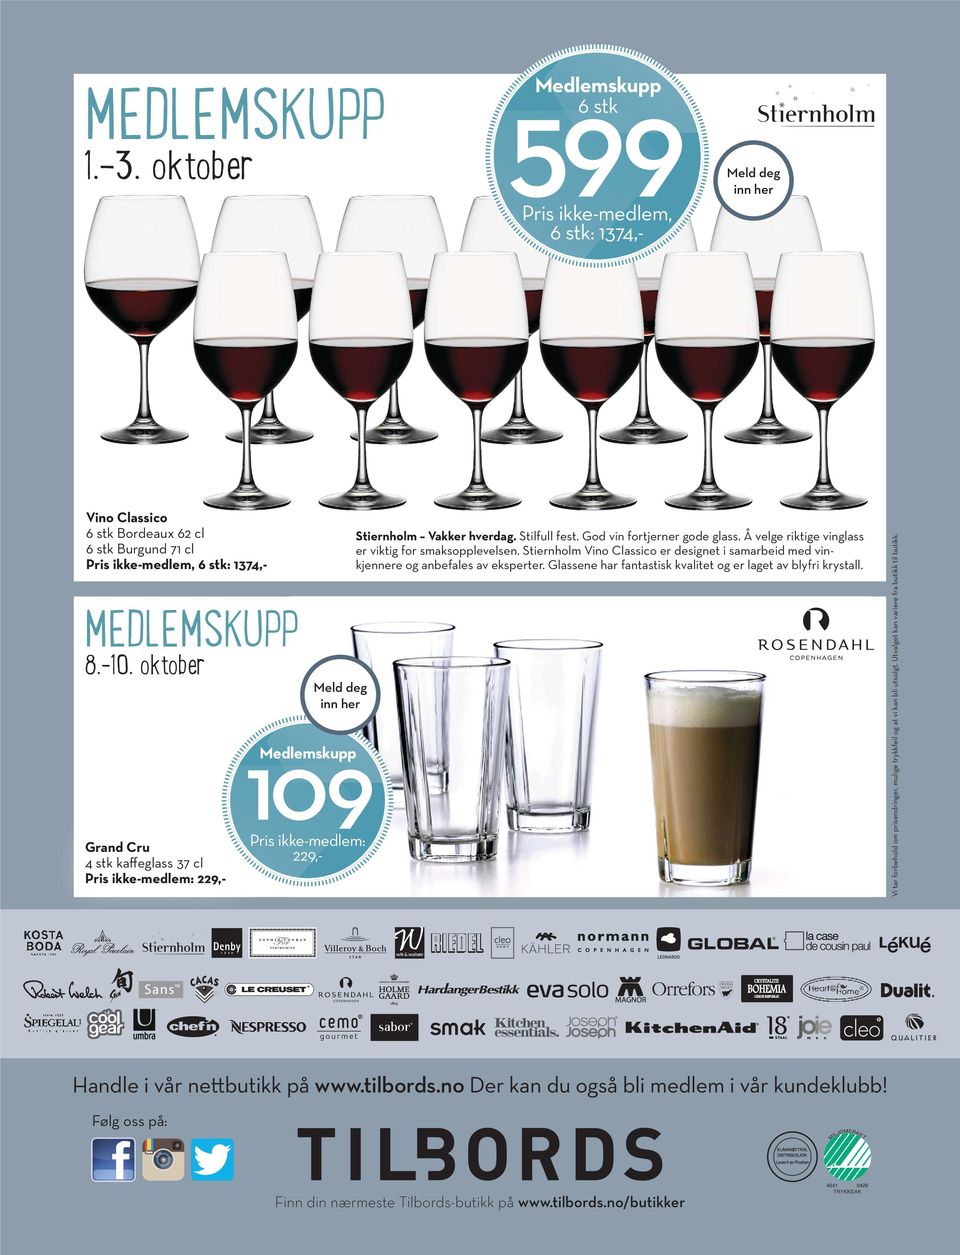 Å velge riktige vinglass er viktig for smaks opplevelsen. Stiernholm Vino Classico er designet i samarbeid med vinkjennere og anbefales av eksperter.